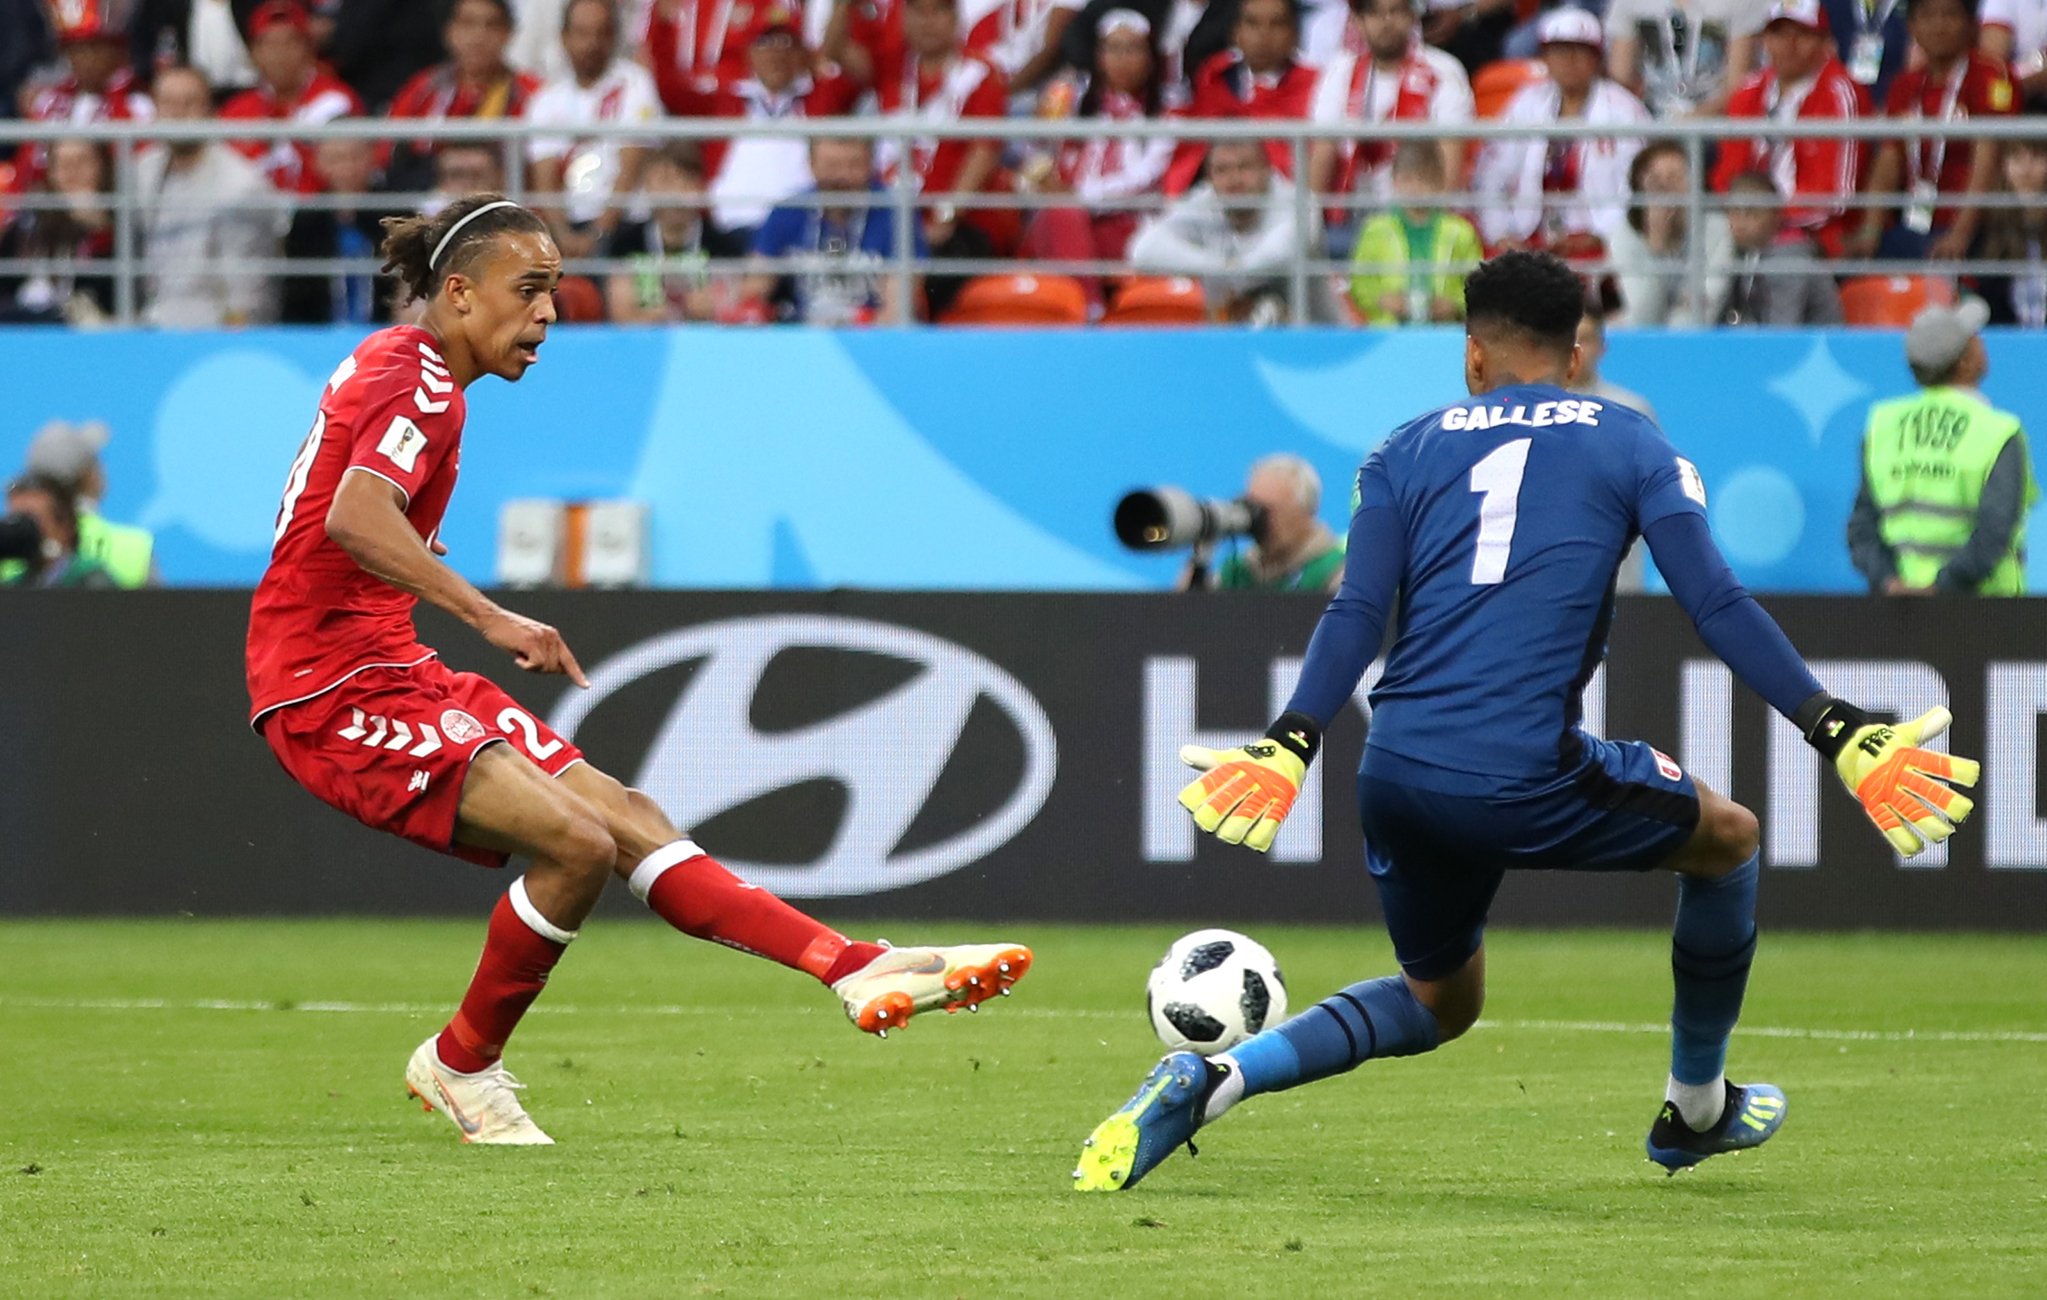 Περού-Δανία 0-1: Ο Πόουλσεν το έβαλε, ο Σμάιχελ τα έβγαλε και η Δανία μπήκε με το δεξί! - Φωτογραφία 2